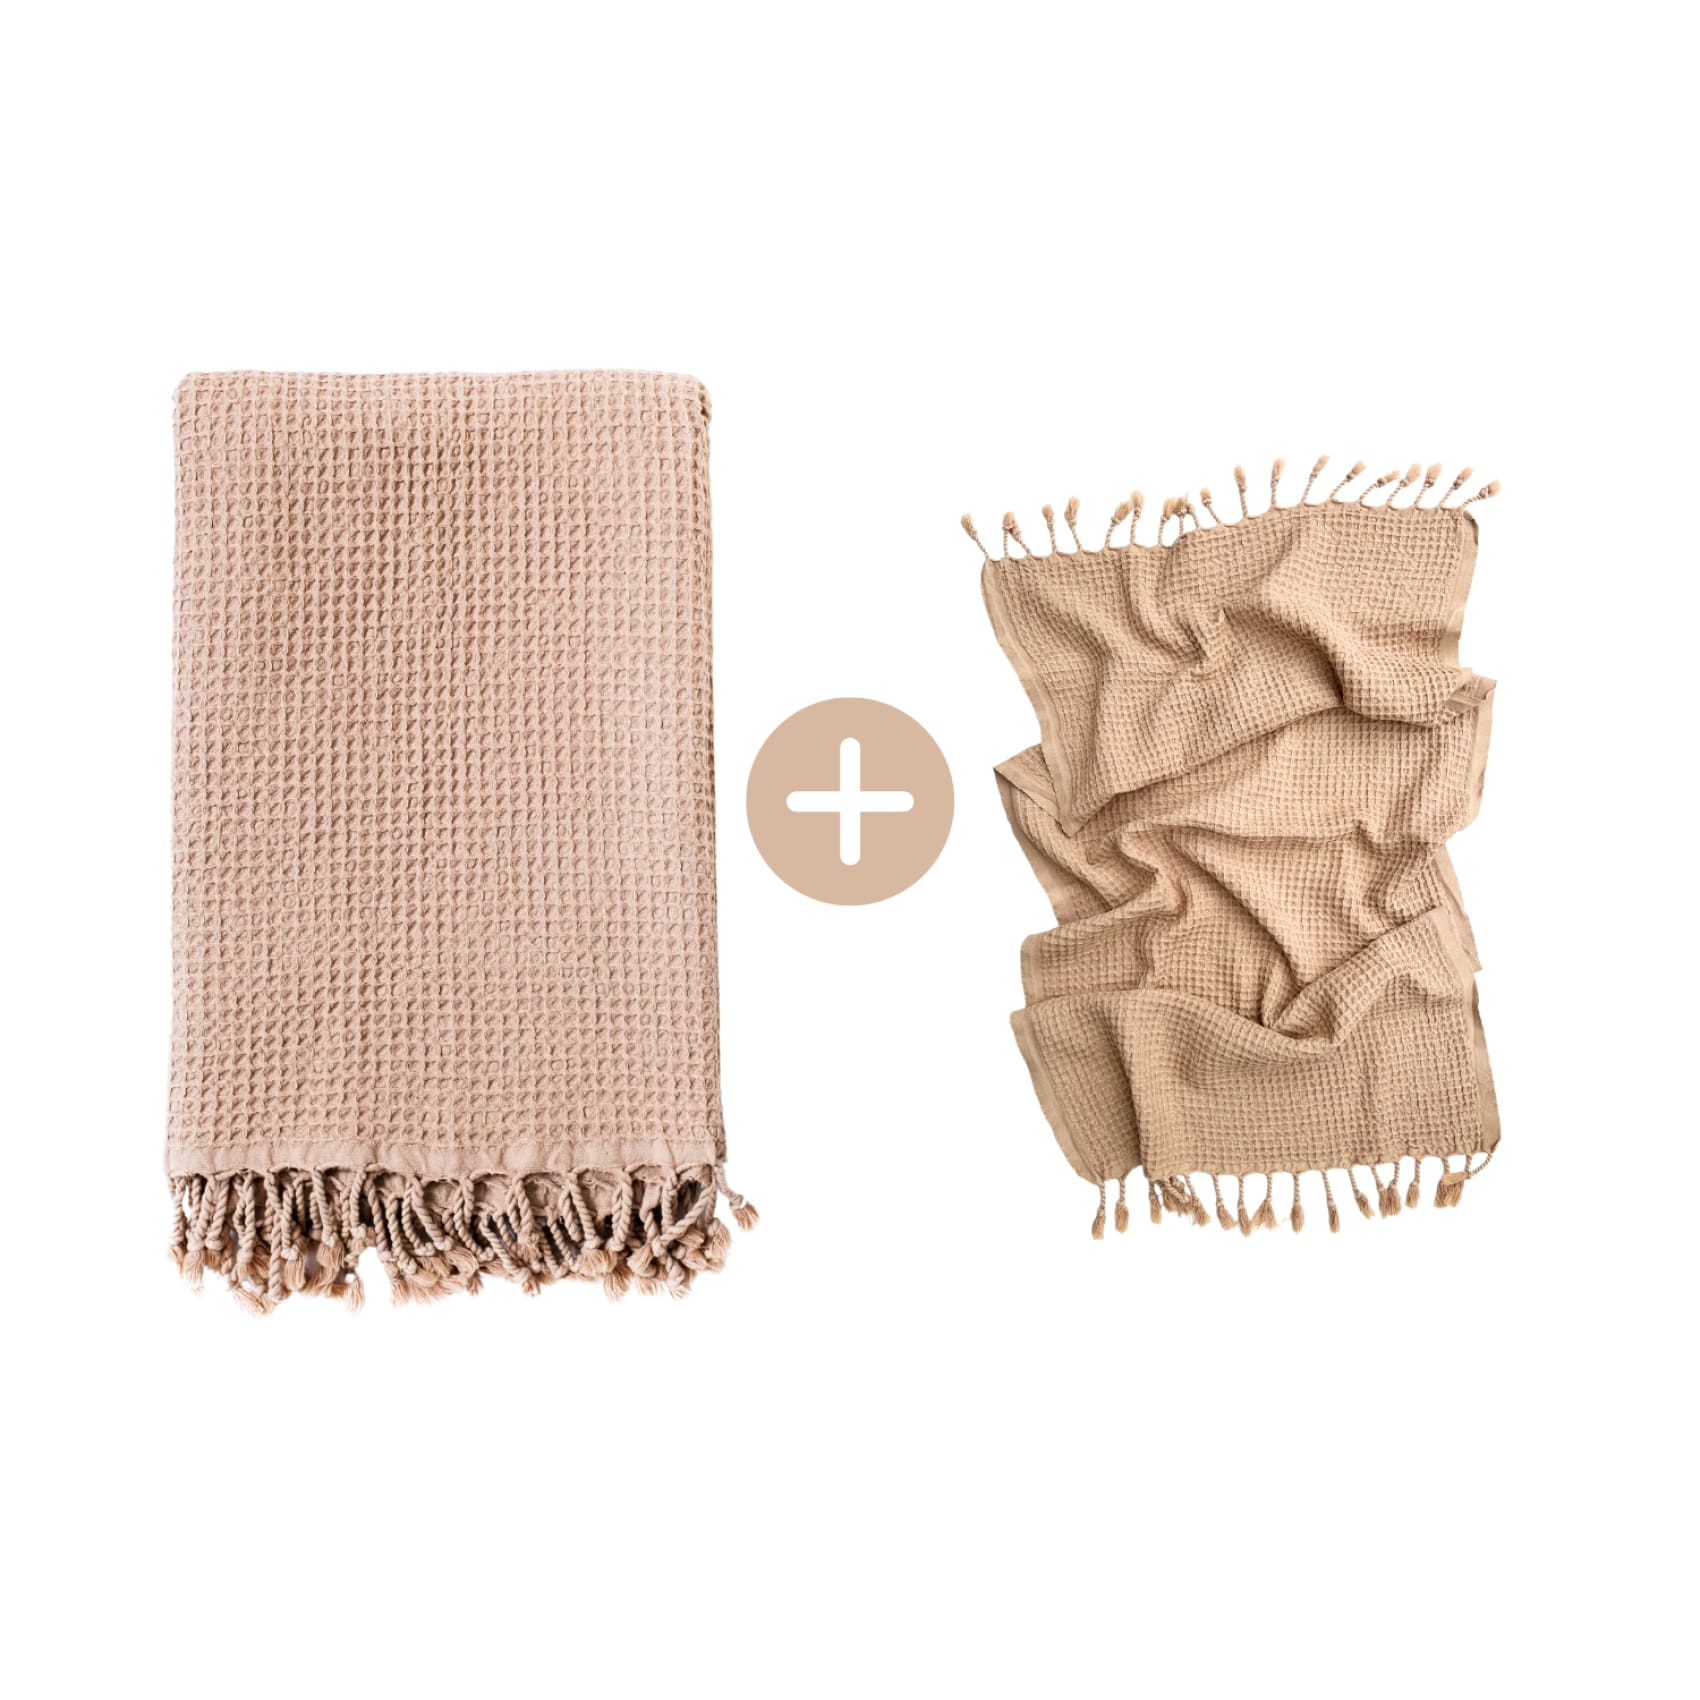 Rulo Bath Set - Cotton Peshtemal & Hand/Hair Towel - Save £10